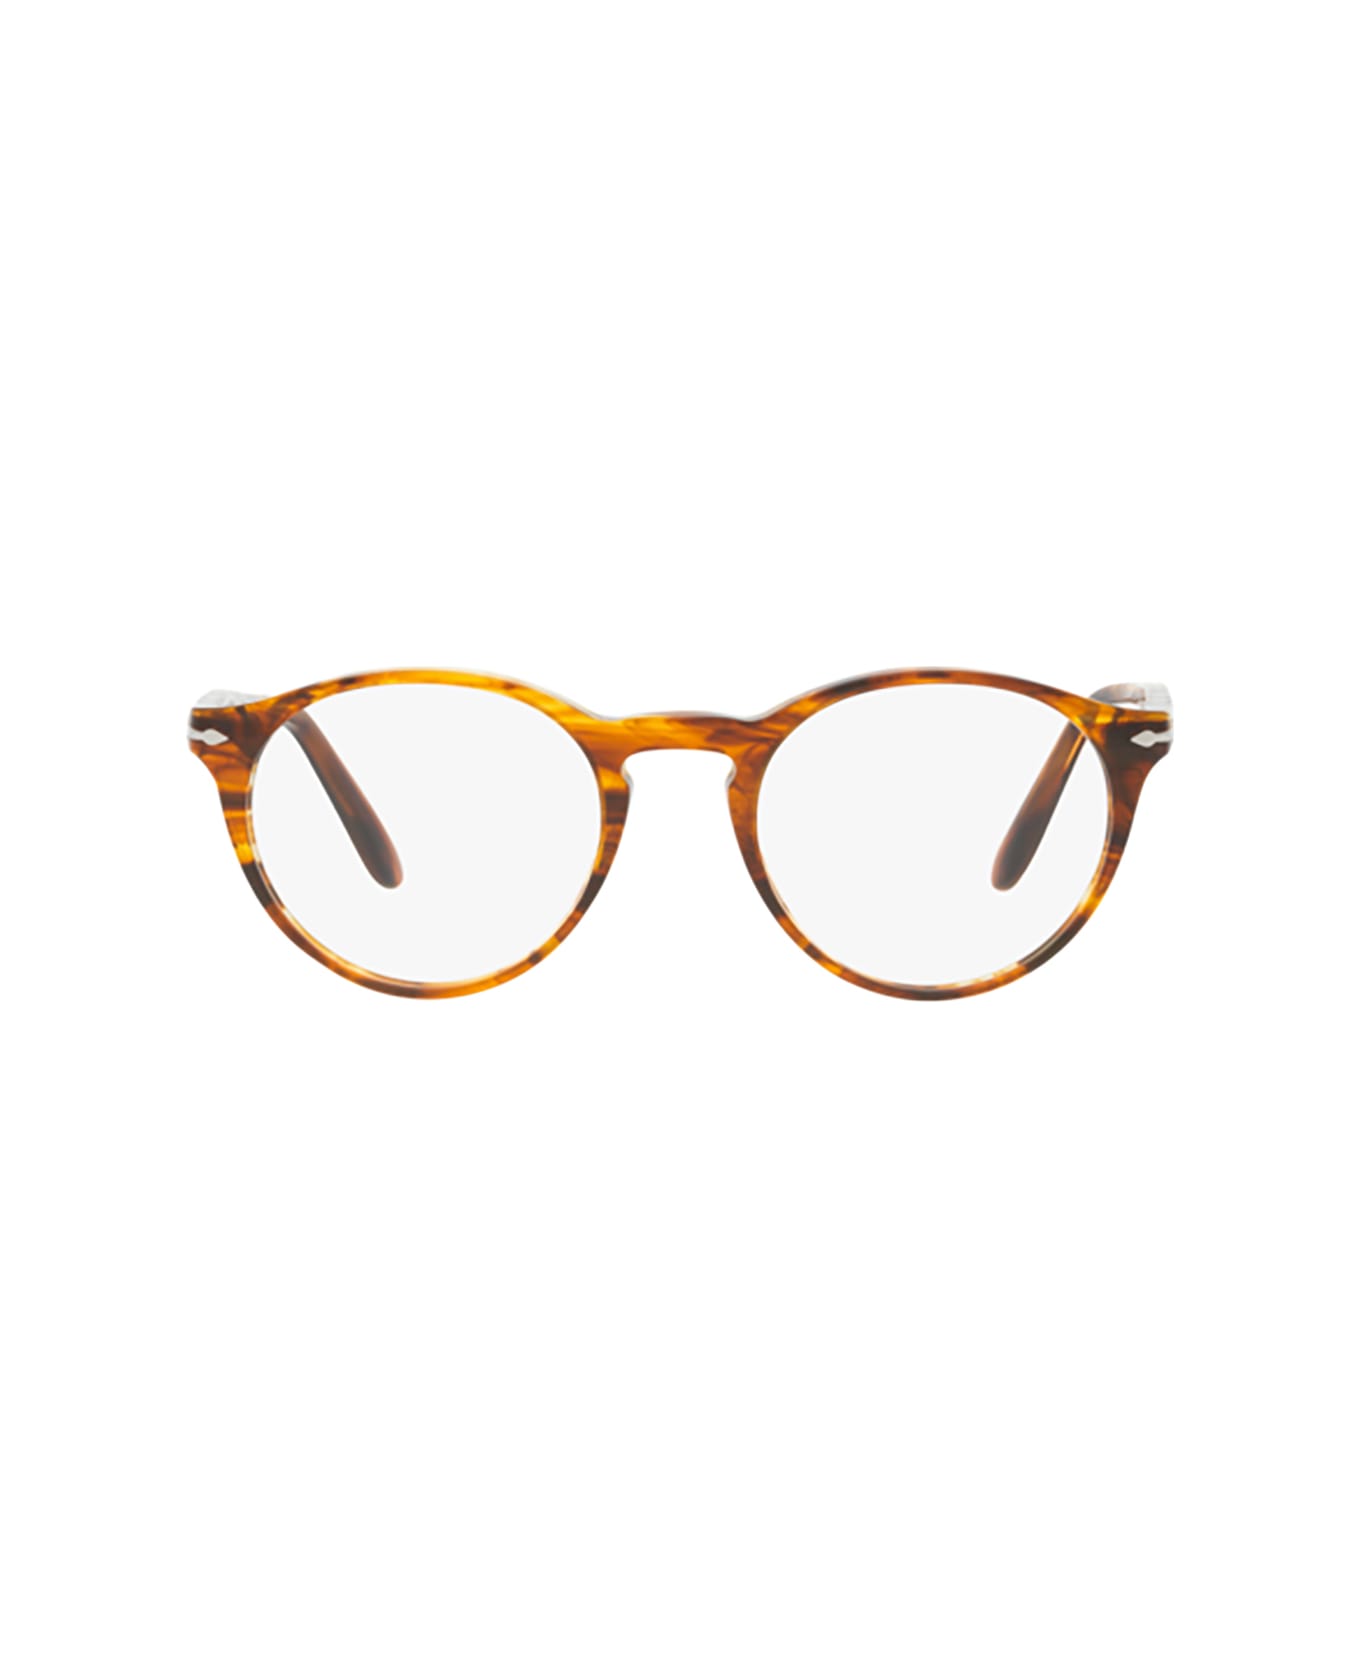 Persol Po3092v Striped Brown Glasses - Striped Brown